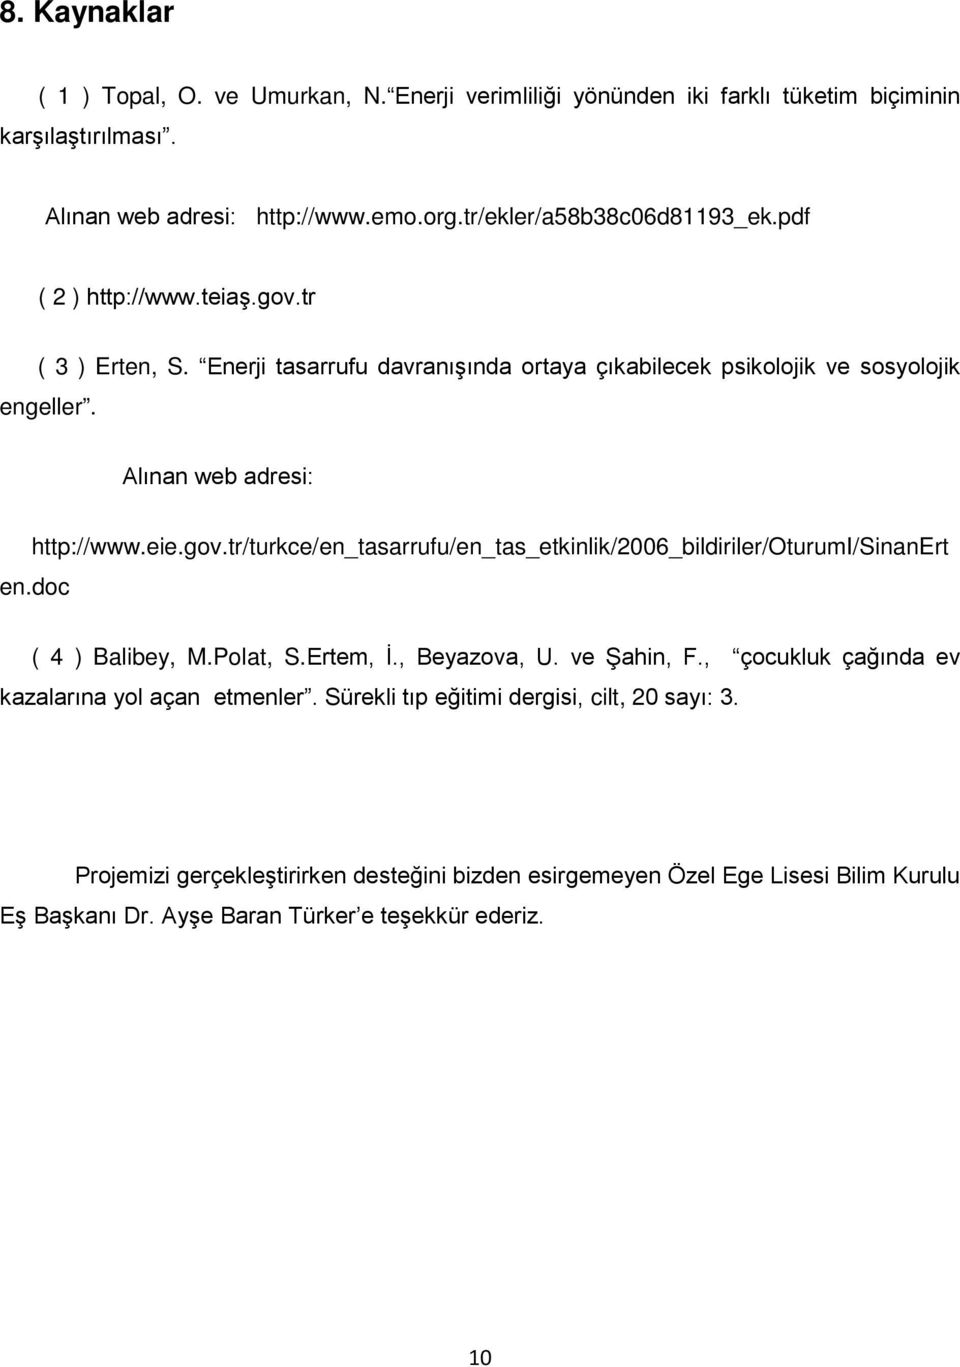 Alınan web adresi: http://www.eie.gov.tr/turkce/en_tasarrufu/en_tas_etkinlik/2006_bildiriler/oturumi/sinanert en.doc ( 4 ) Balibey, M.Polat, S.Ertem, İ., Beyazova, U. ve Şahin, F.